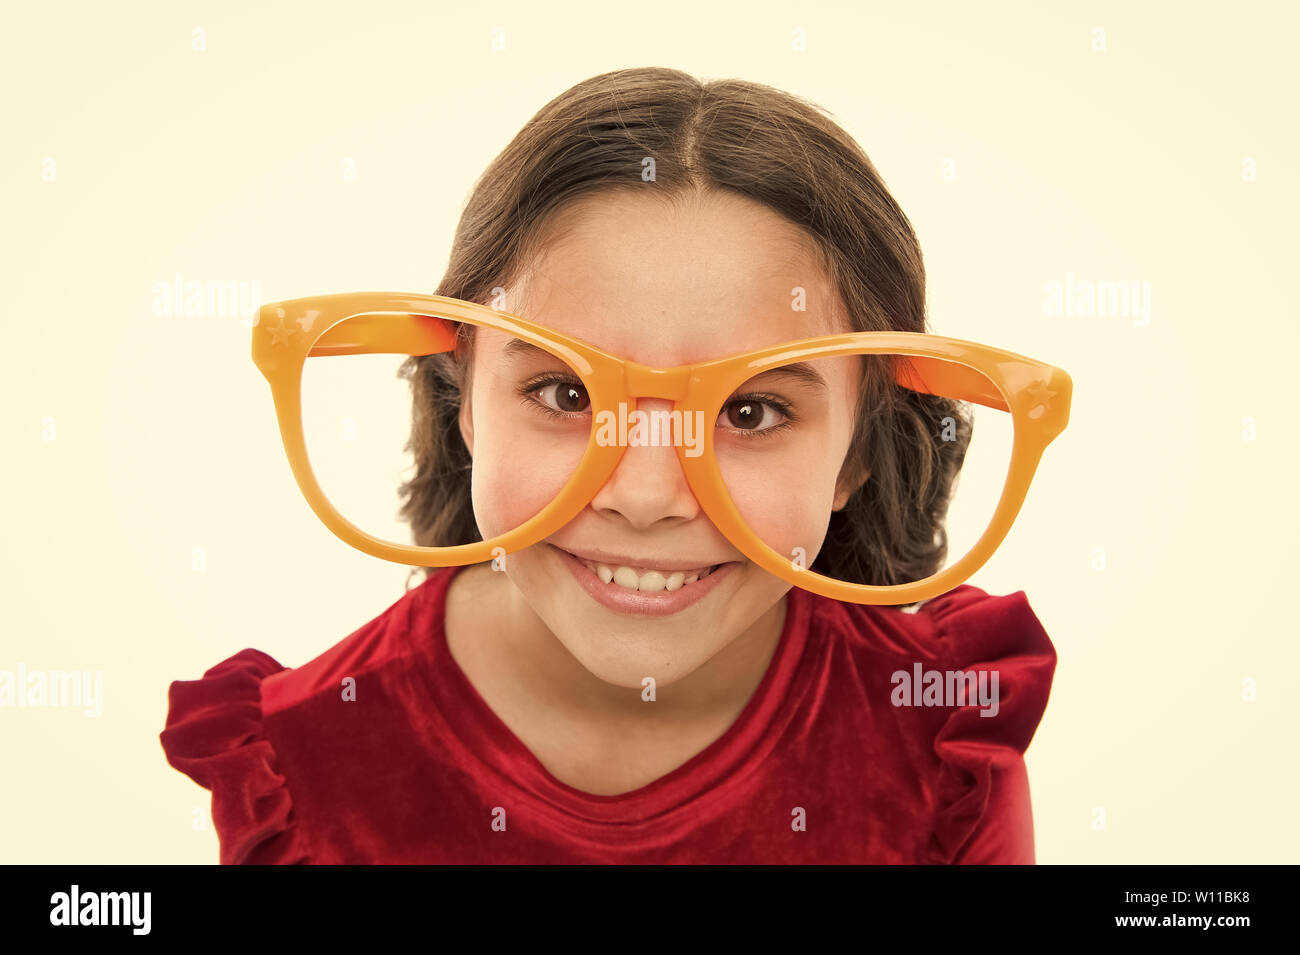 Los ejercicios oculares para mejorar la visión. Chica kid usan grandes gafas.  La vista y la salud. Óptica y visión del tratamiento. Ejercicio Efectivo  ojos zoom. Niño feliz con muy buena vista.